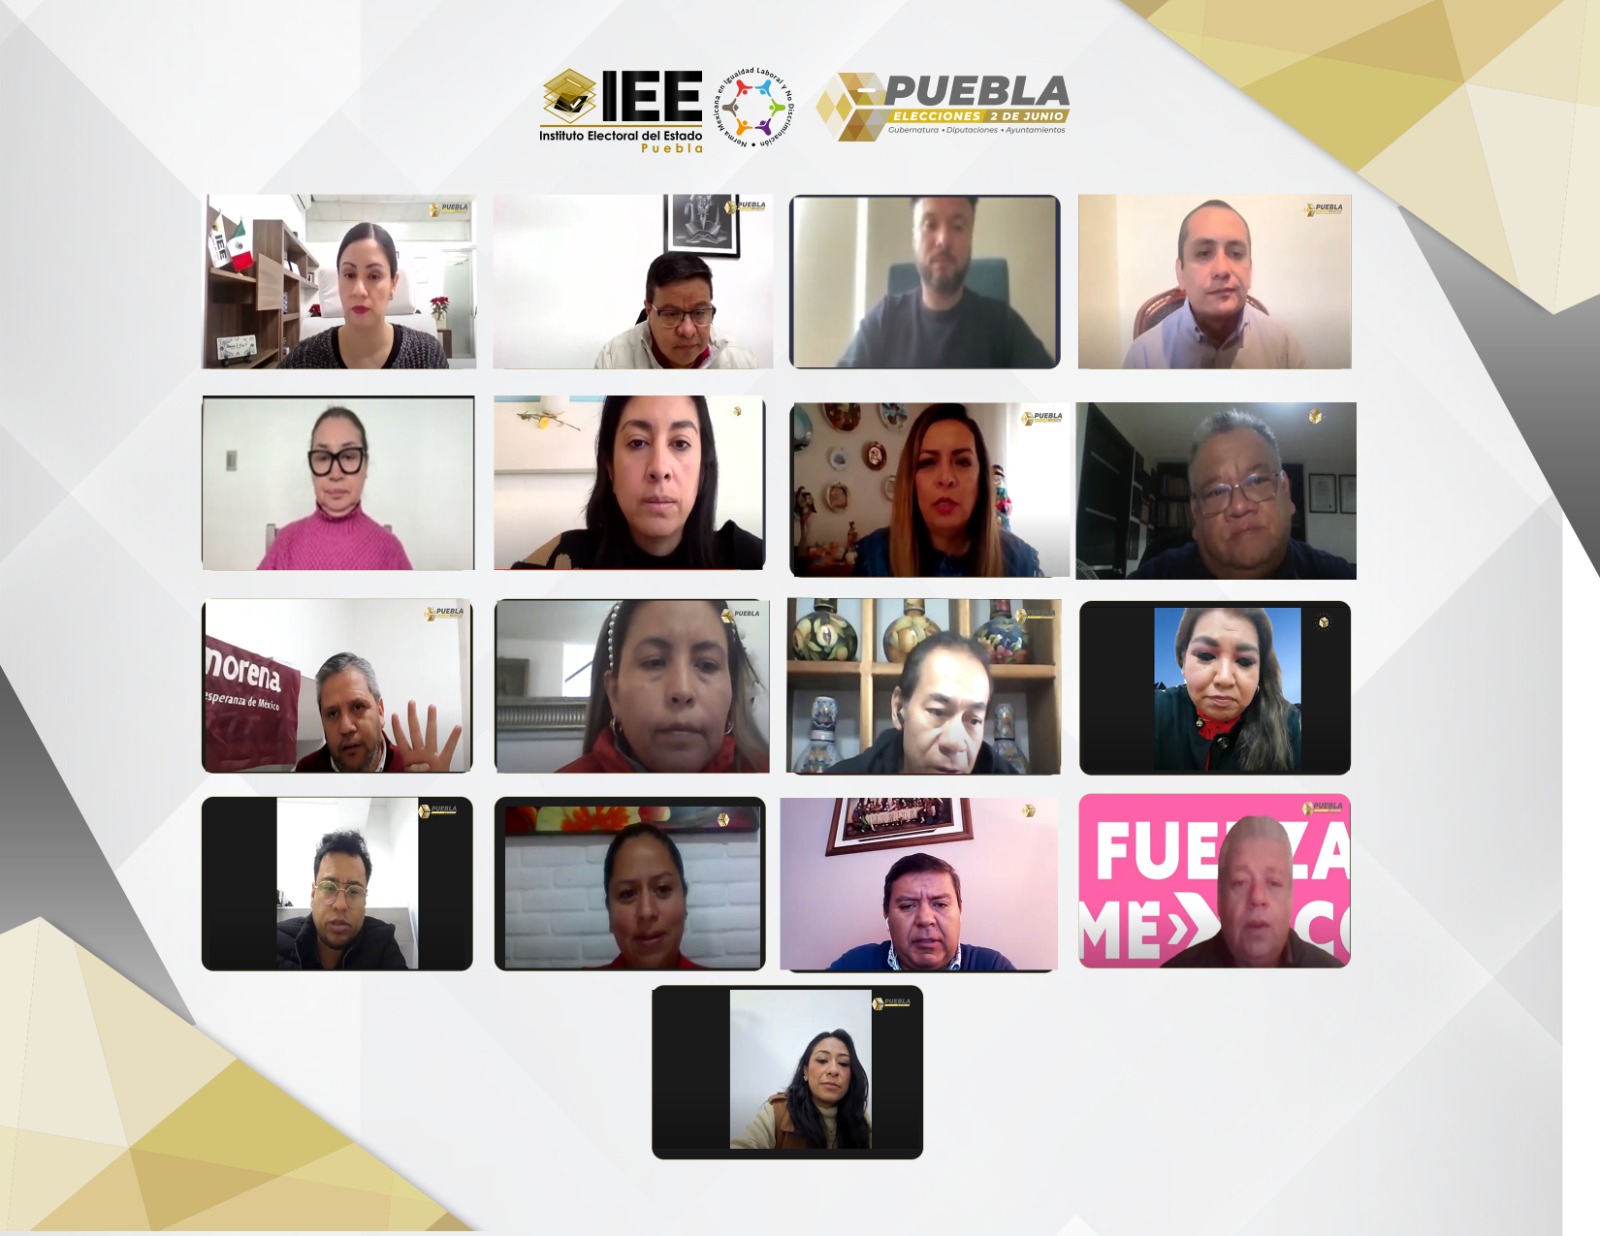 IEEP avala coalición opositora “Mejor Rumbo para Puebla”